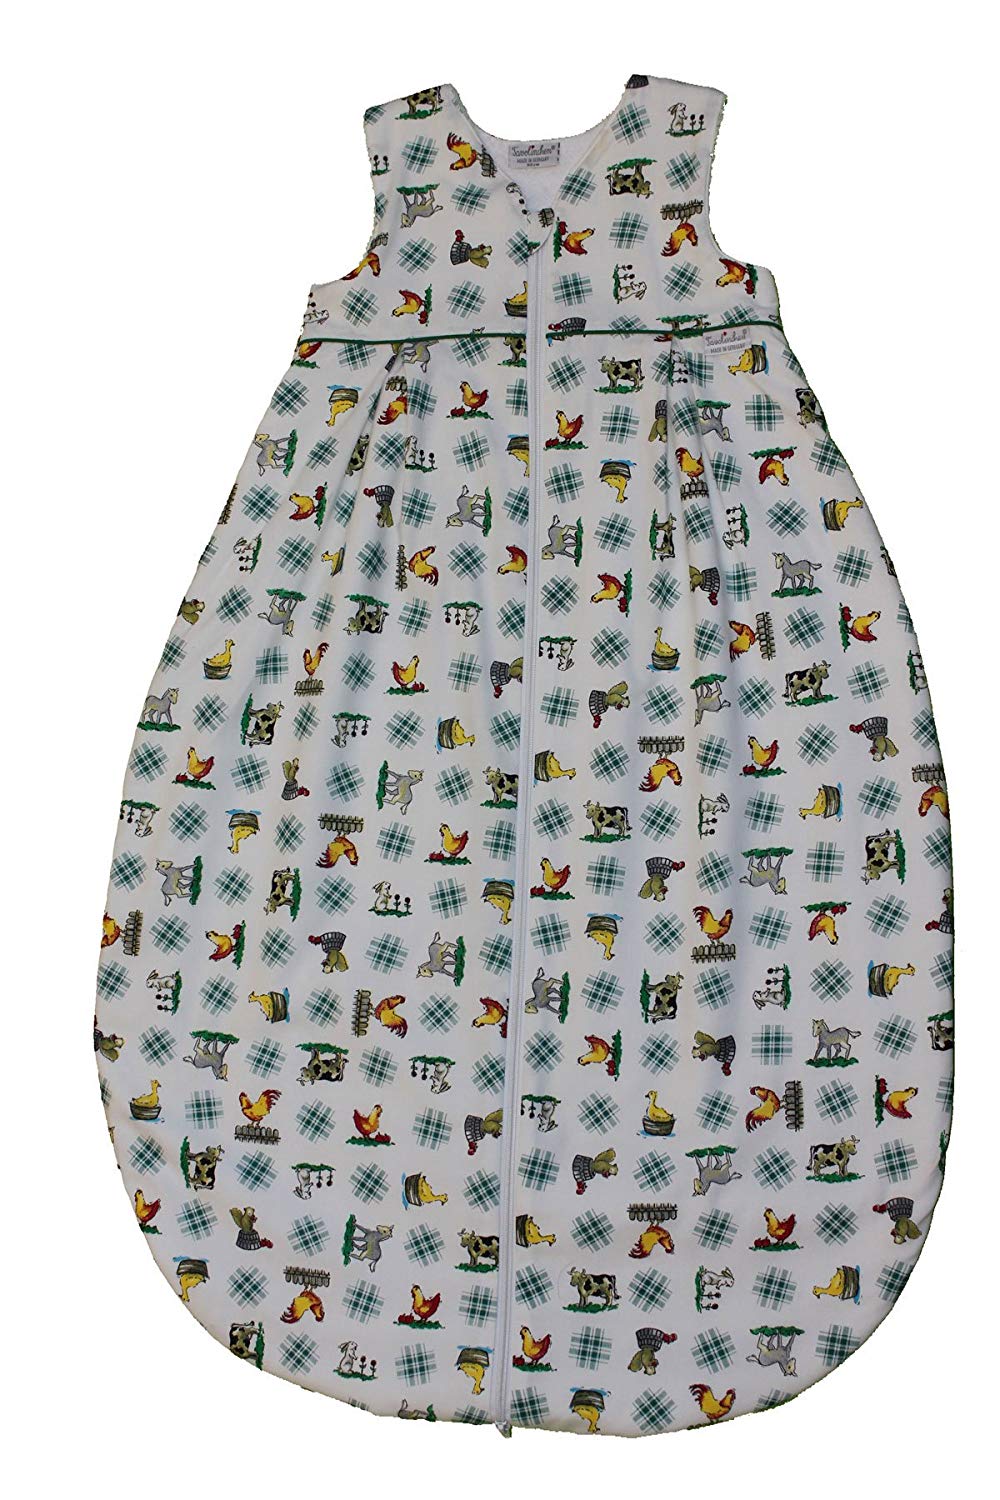 Tavolinchen 35/2251-85-110 Terry Cloth Sleeping Bag Farmyard Size 110 cm Green